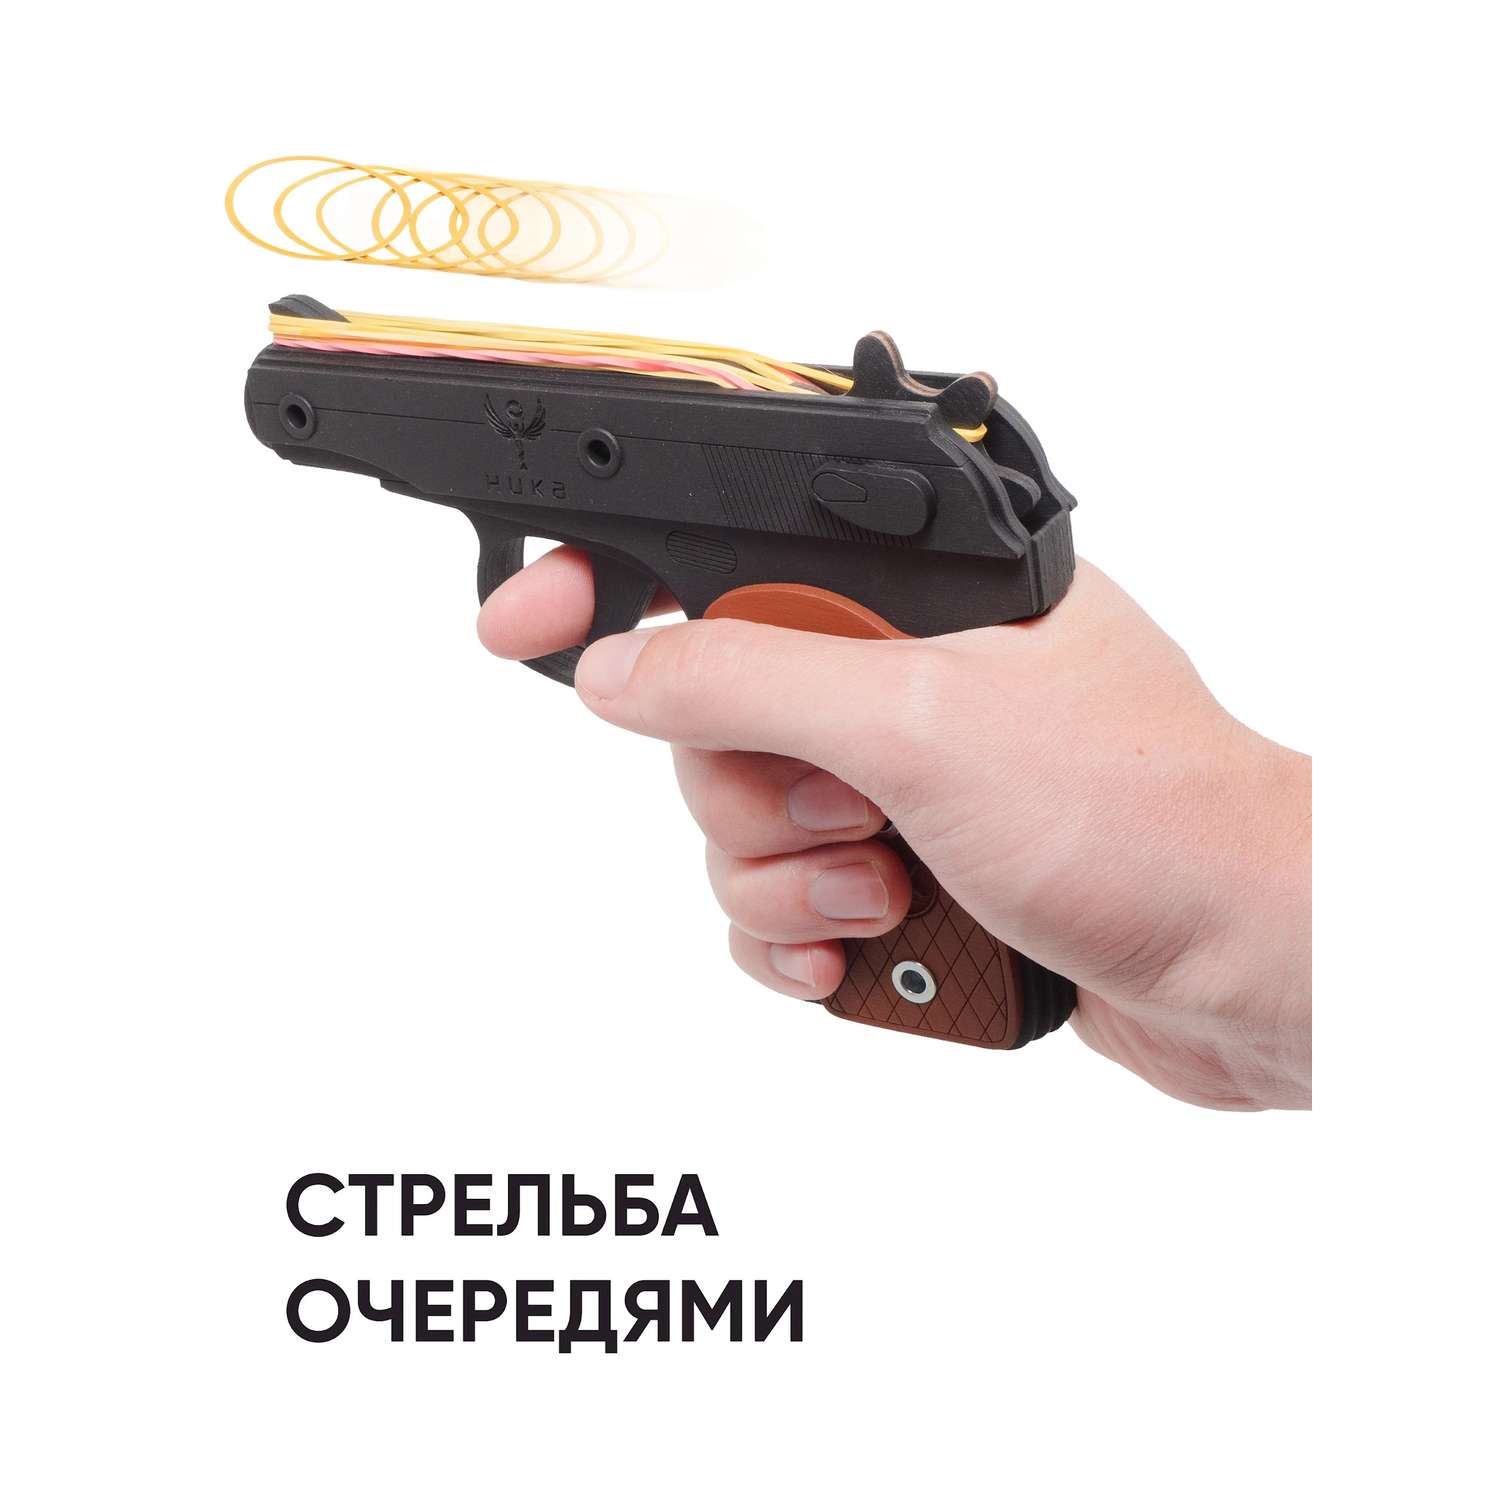 Резинкострел НИКА игрушки Пистолет Макарова в картонной упаковке - фото 2